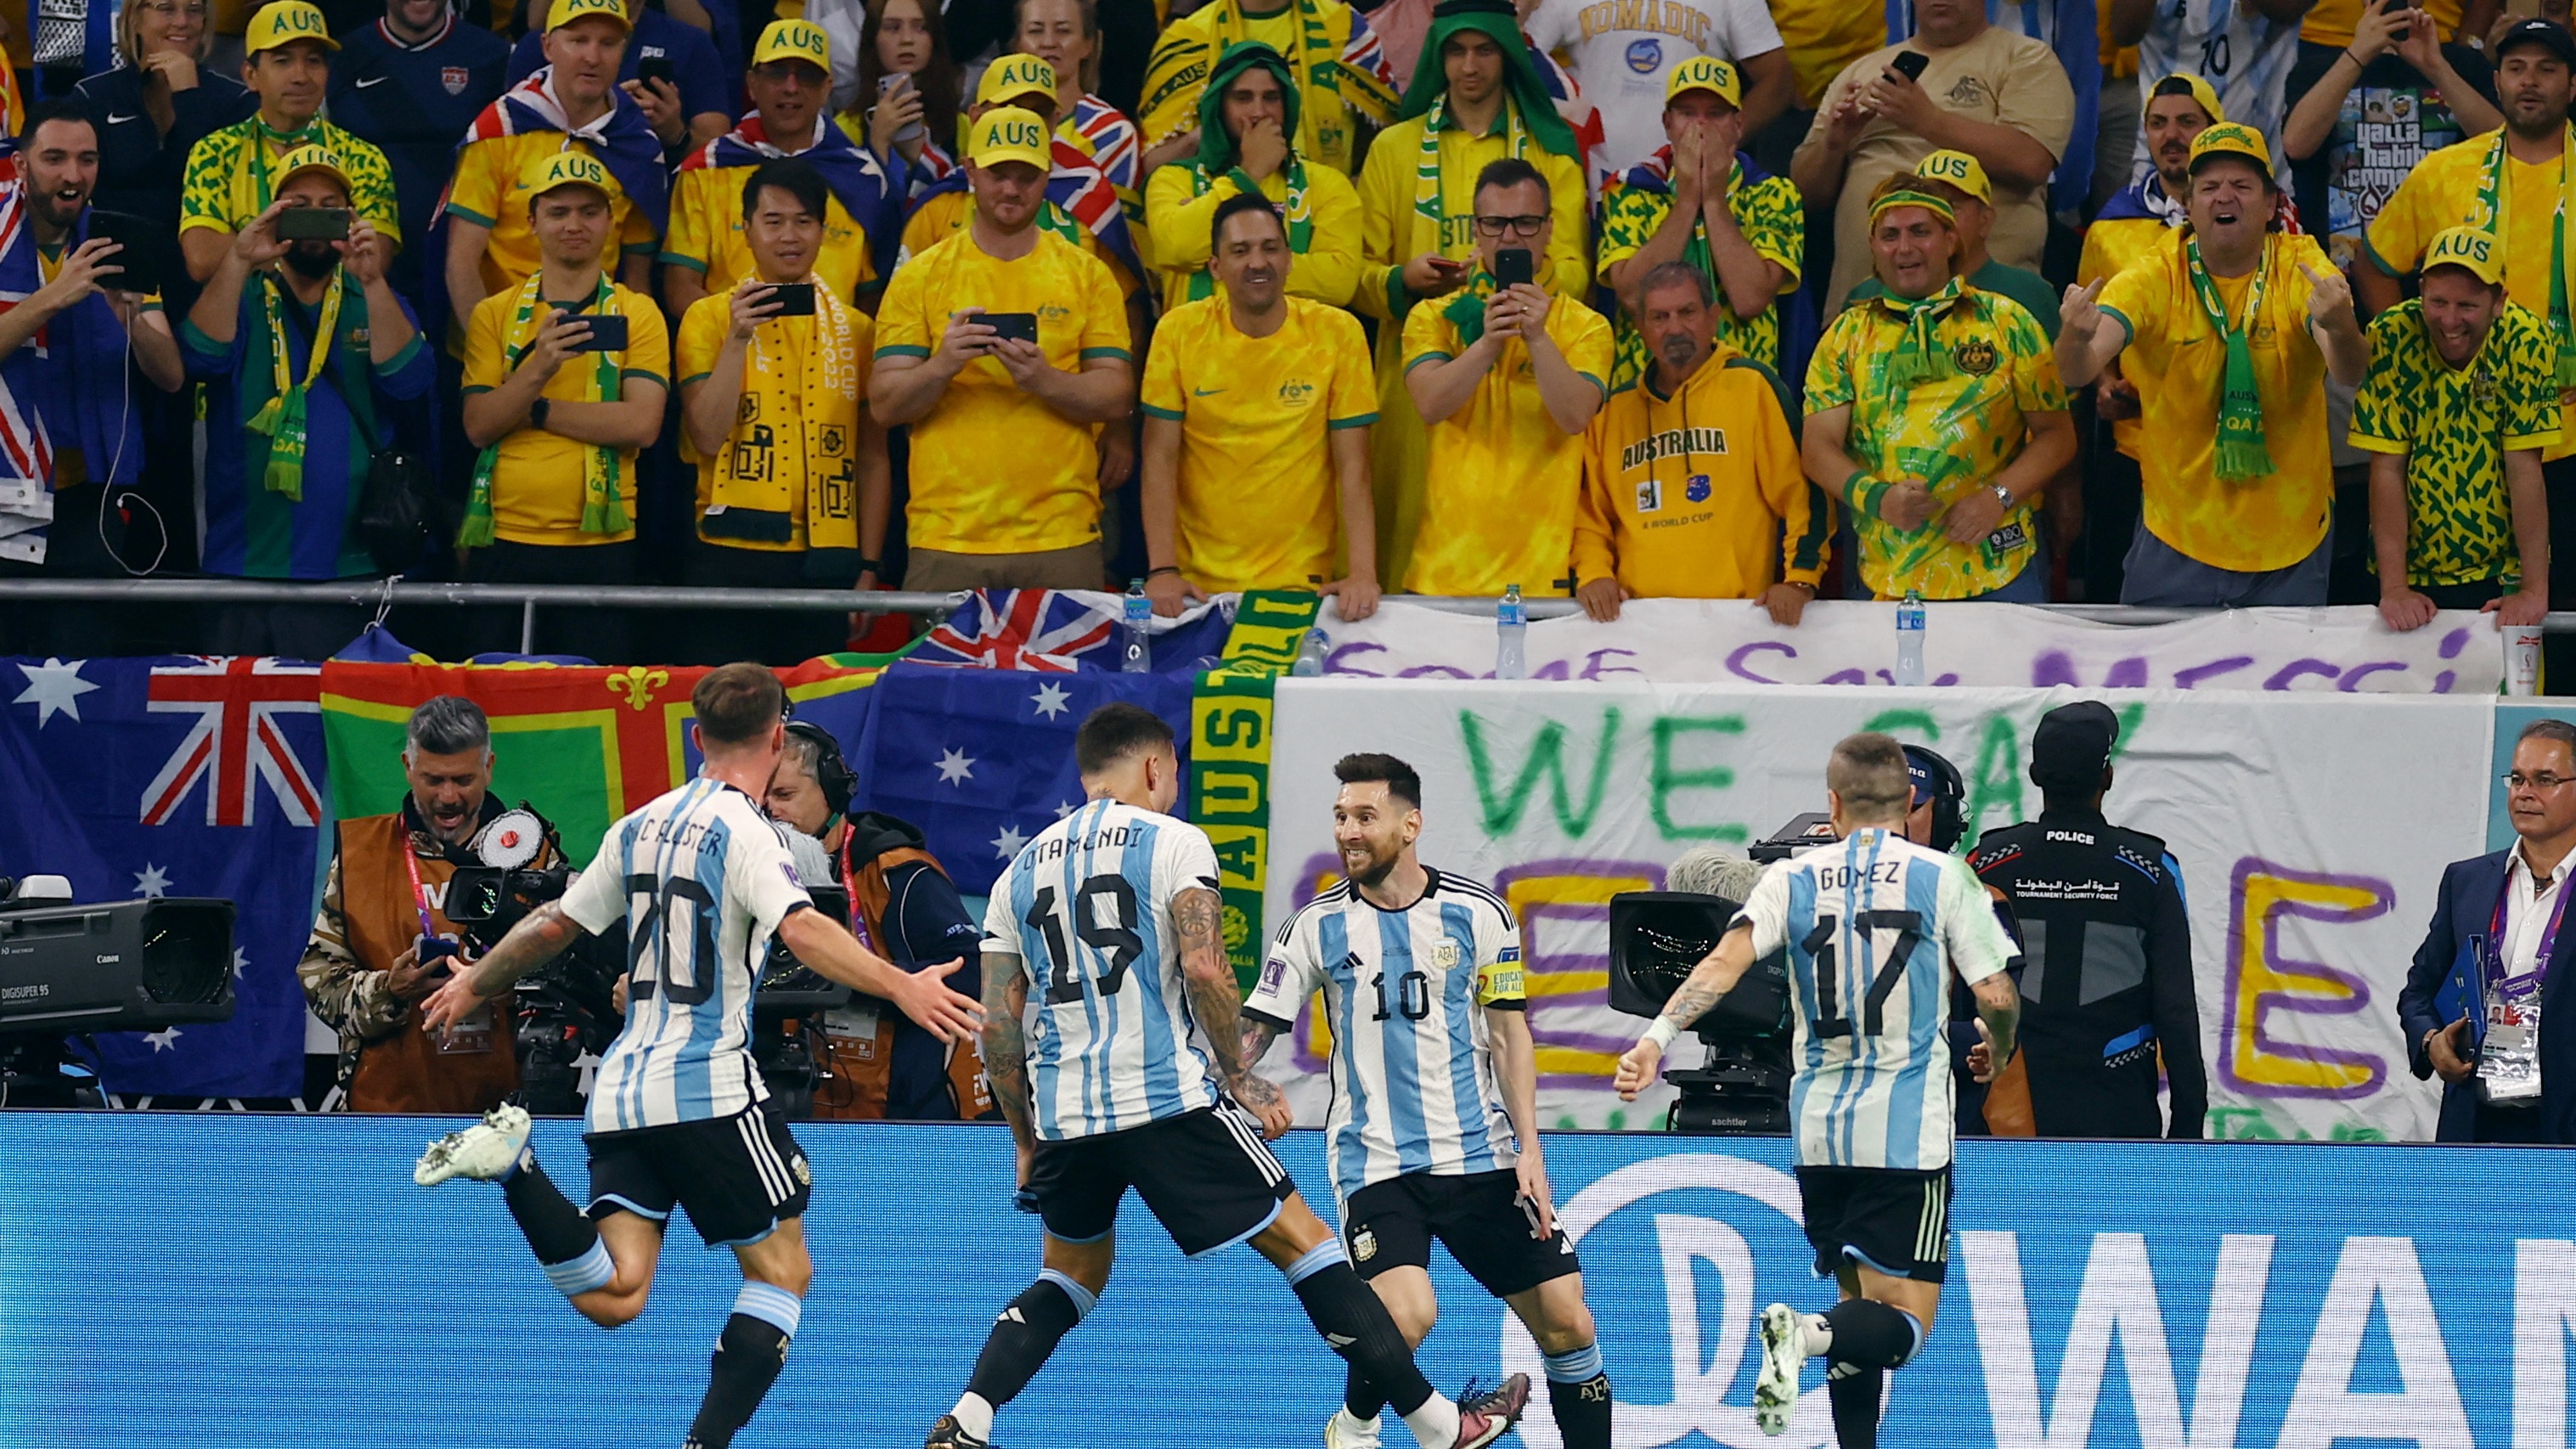 “¿Dónde está Messi?”: el video de la provocación de los aficionados australianos a La Pulga segundos antes de que anotara el primer gol de Argentina